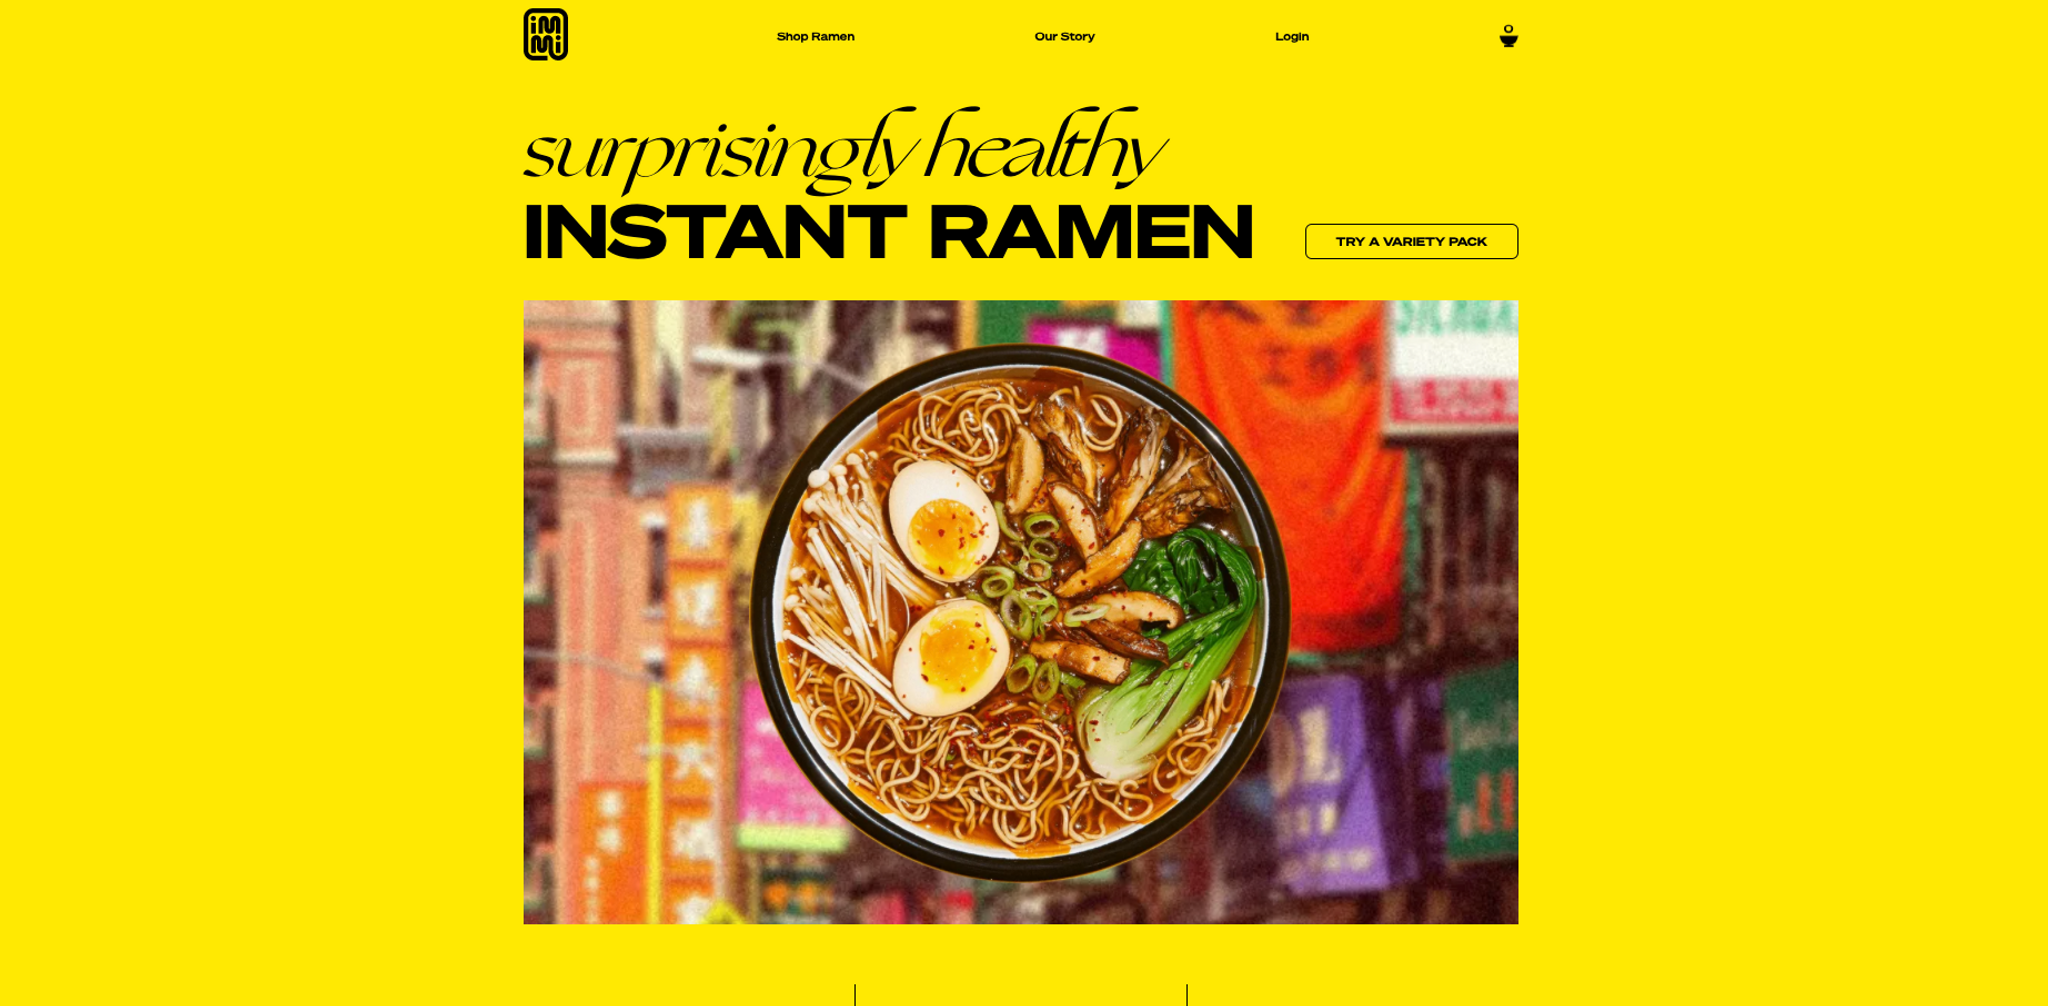 Immi Ramen: healthy, super-convenient noodles